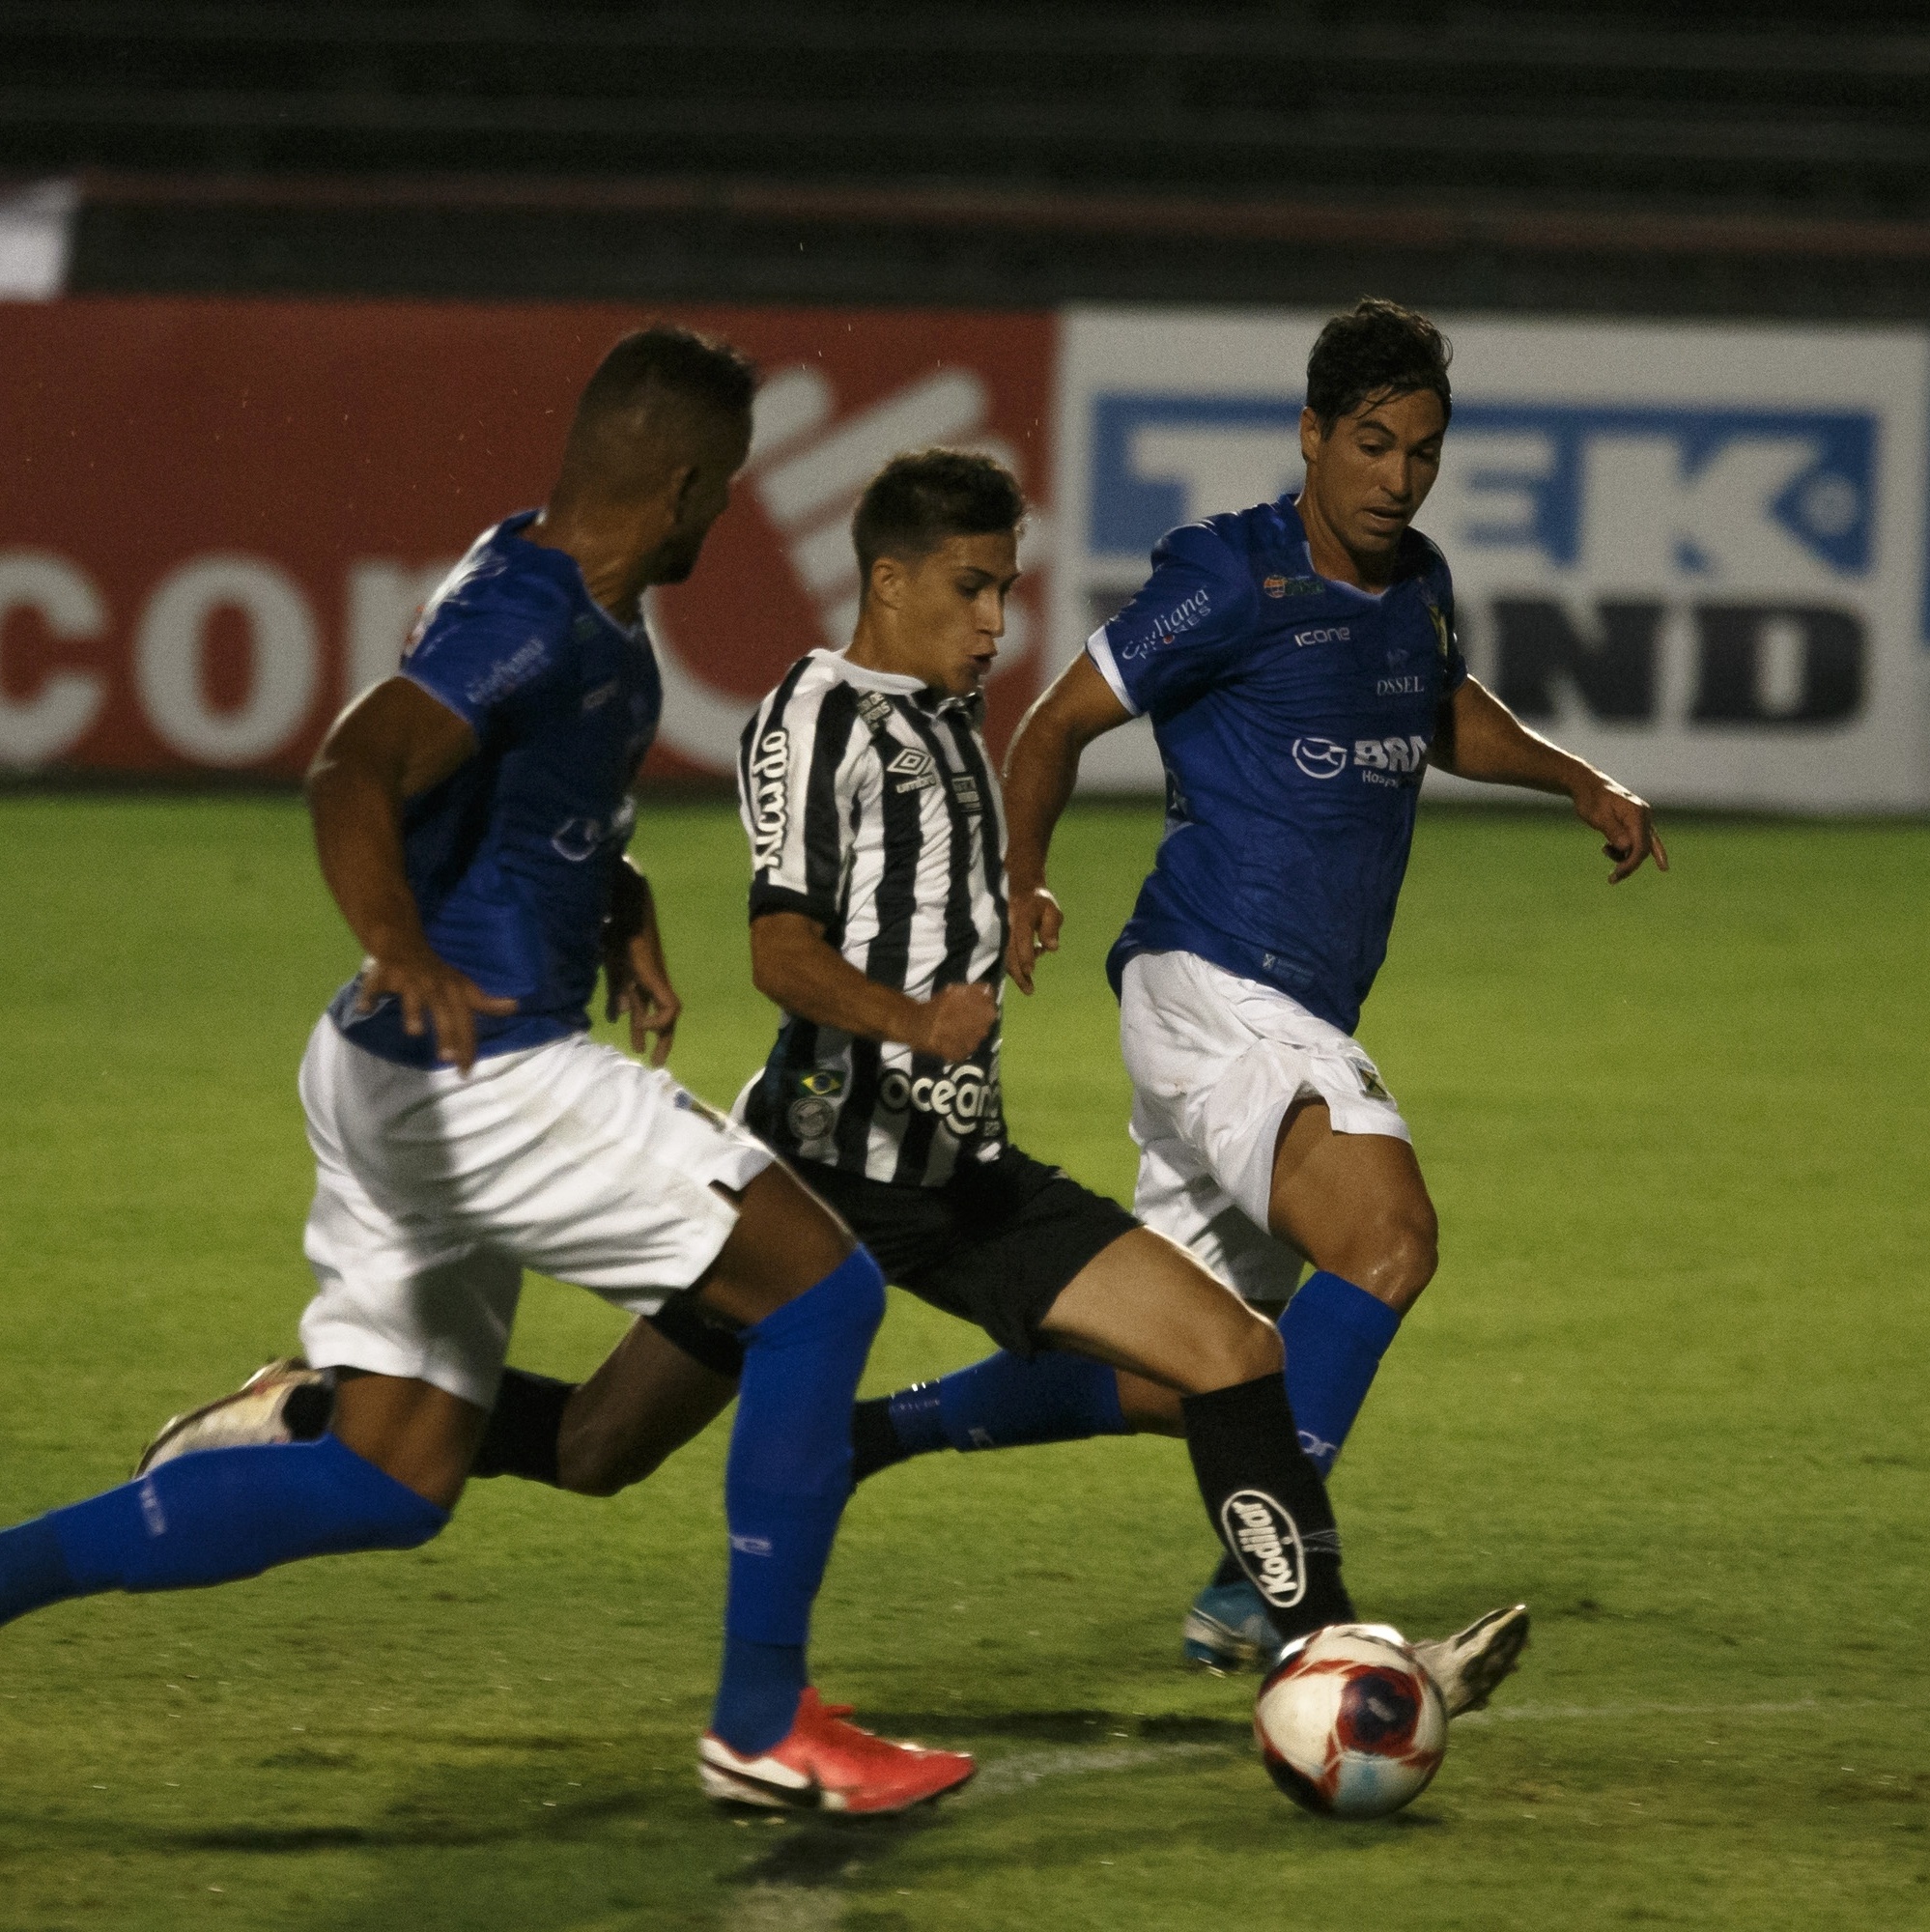 Botafogo-SP x Novorizontino: veja data, horário e onde assistir - Gazeta  Esportiva - Muito além dos 90 minutos